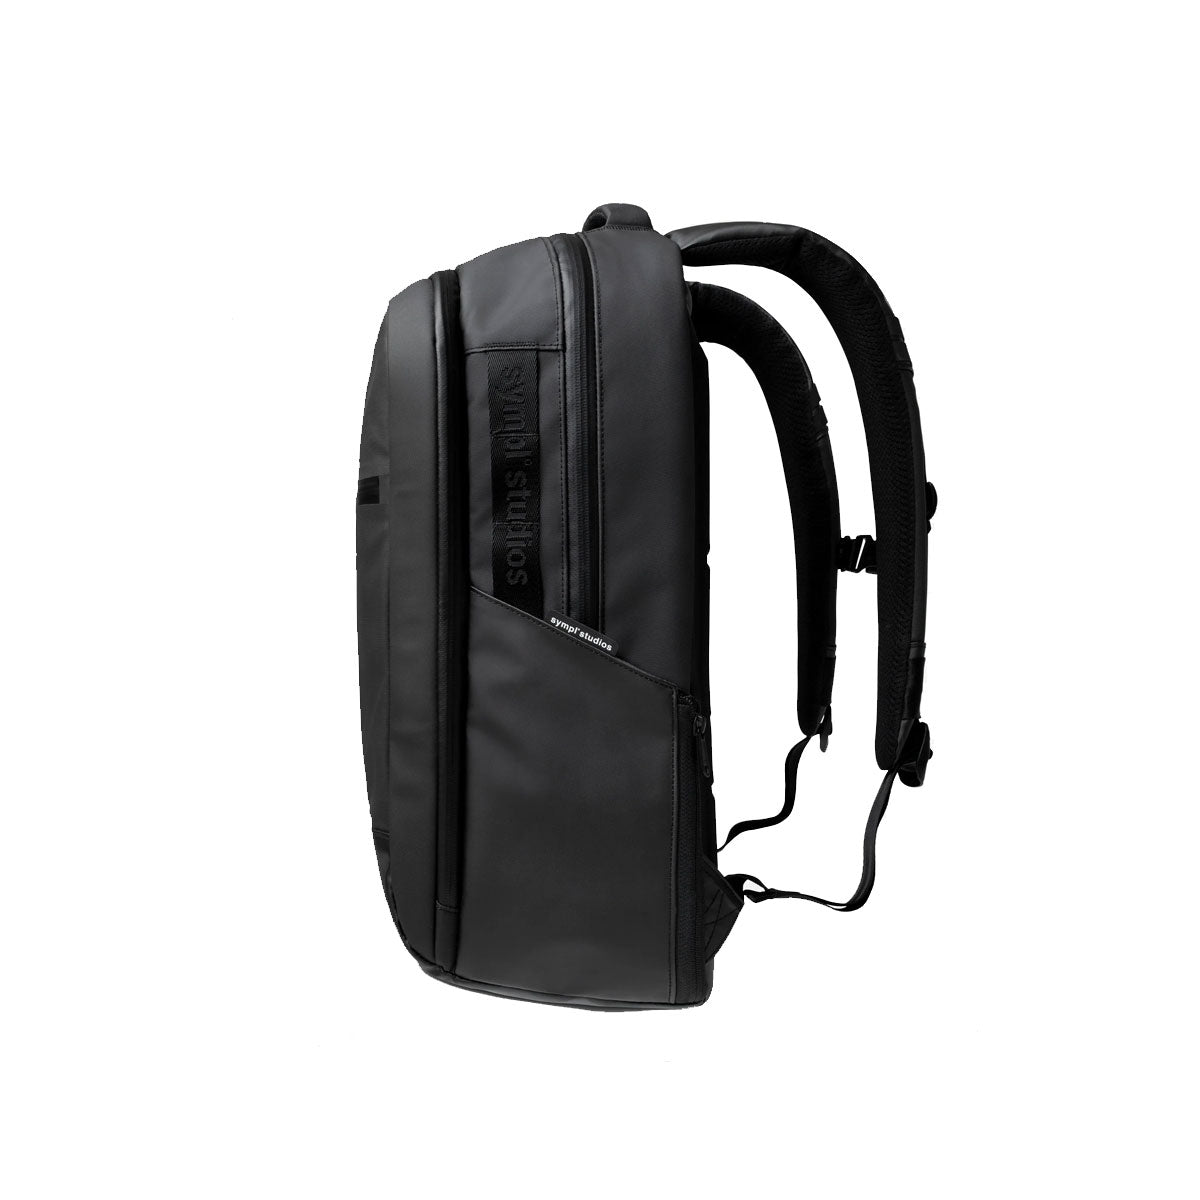 [PO] Sympl : Weekender Backpack 25L